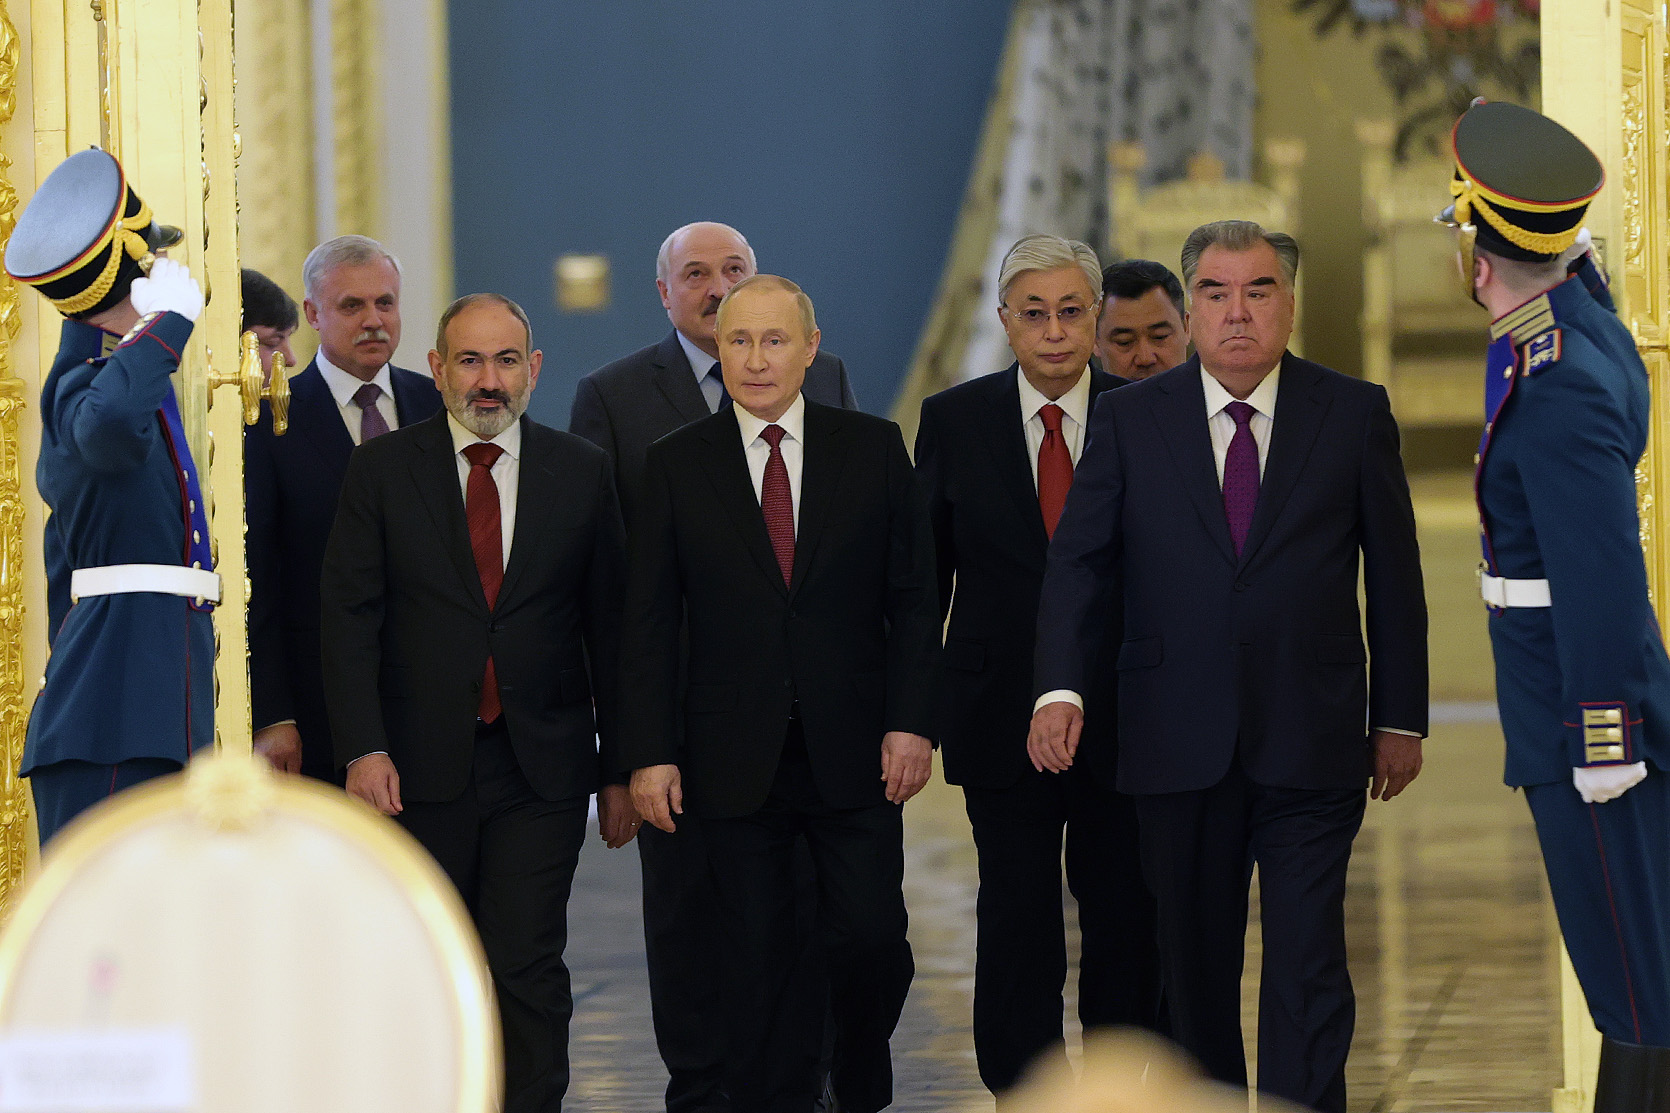  Премьер-министр Пашинян в Москве принял участие во встрече лидеров государств–членов ОДКБ и в своей речи коснулся проблем и перспектив развития Организации